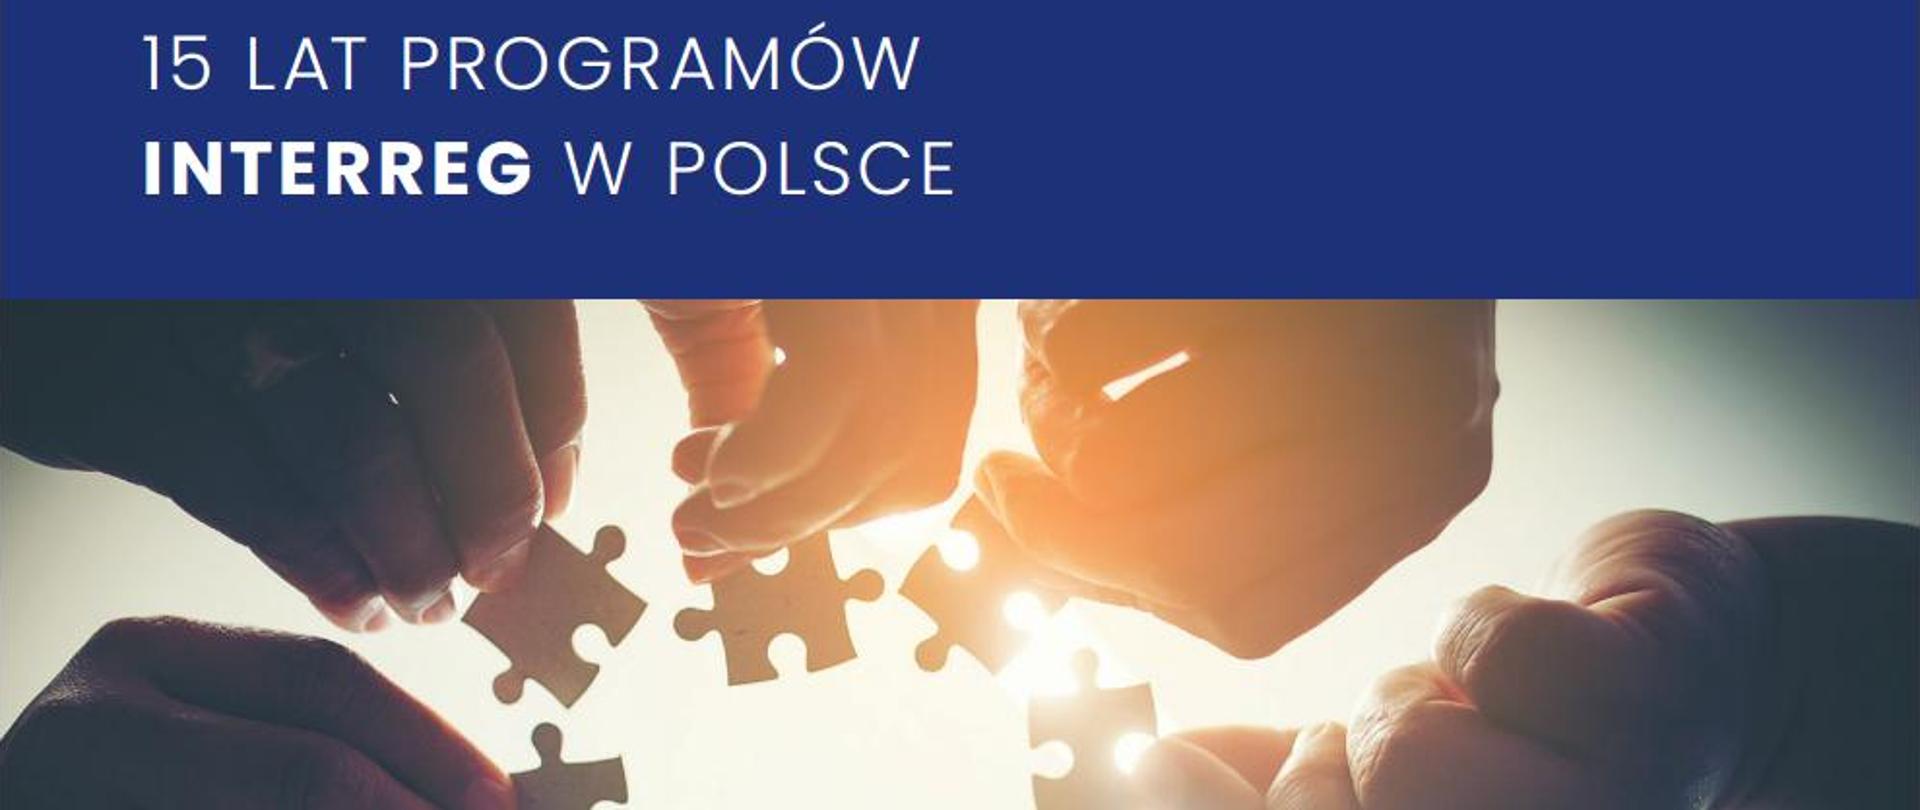 Napis: 15 lat programów Interrego w Polsce. Poniżej zdjęcie dłoni trzymających puzzle.